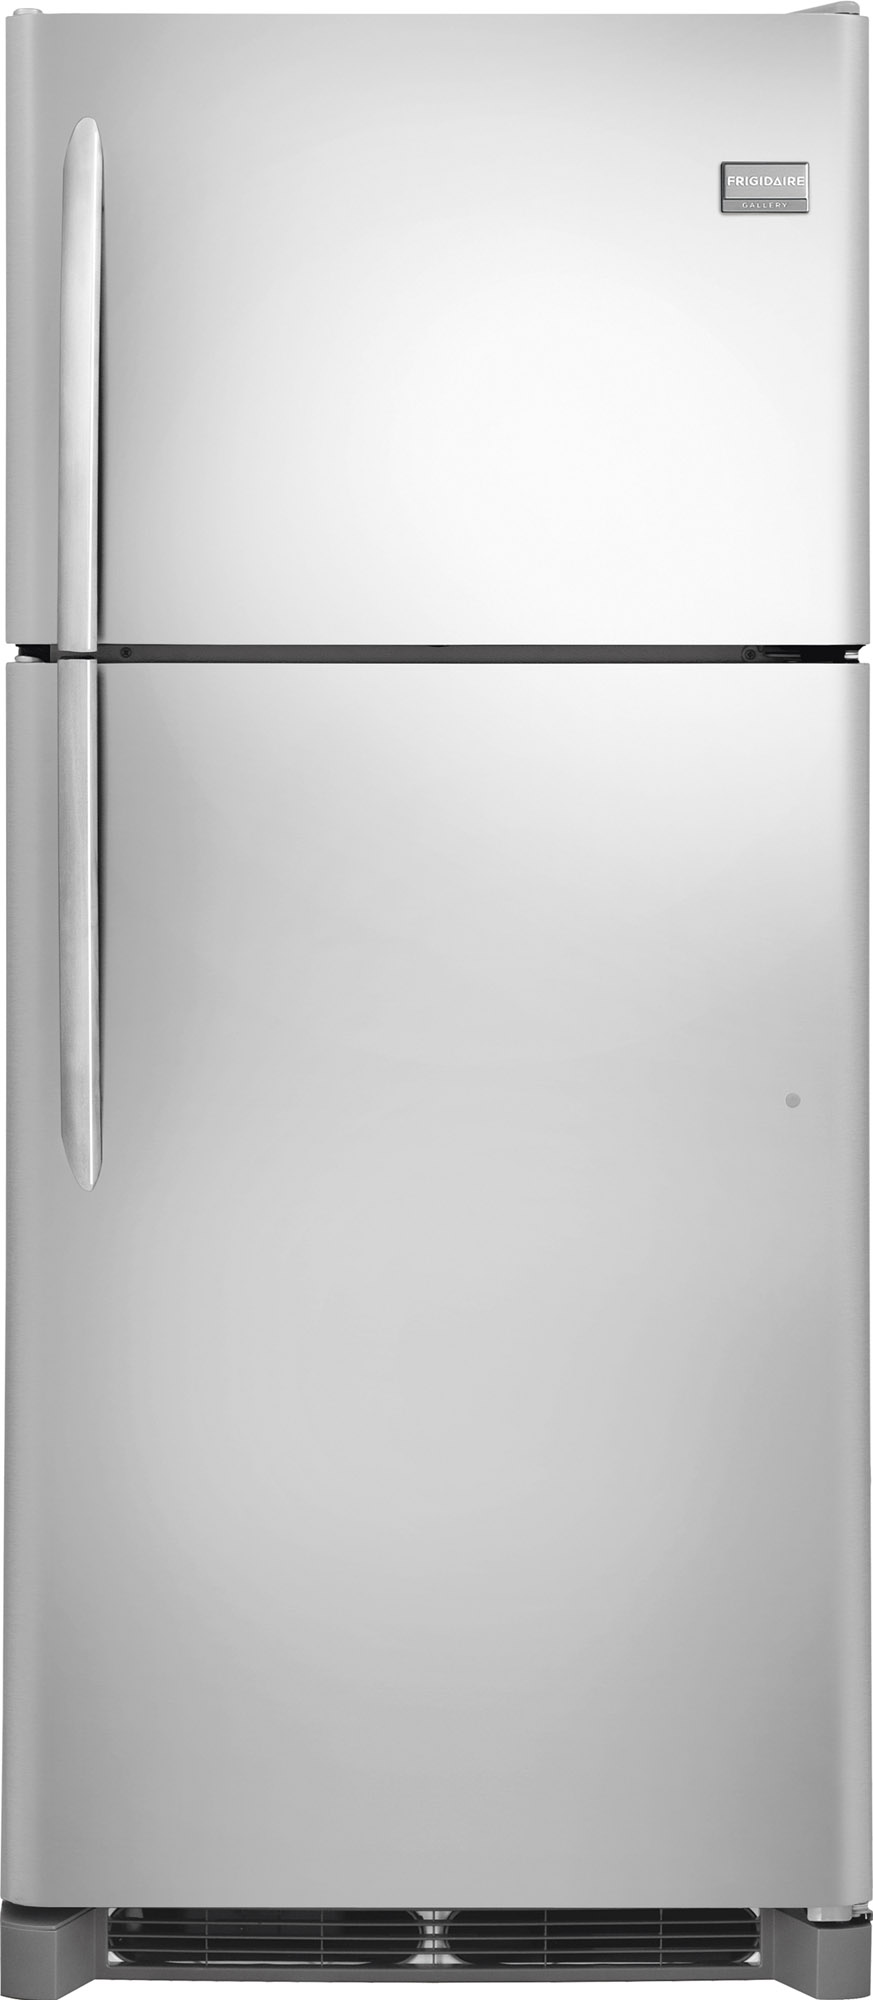 How to Fix a Frigidaire Refrigerator: Refrigerator Troubleshooting